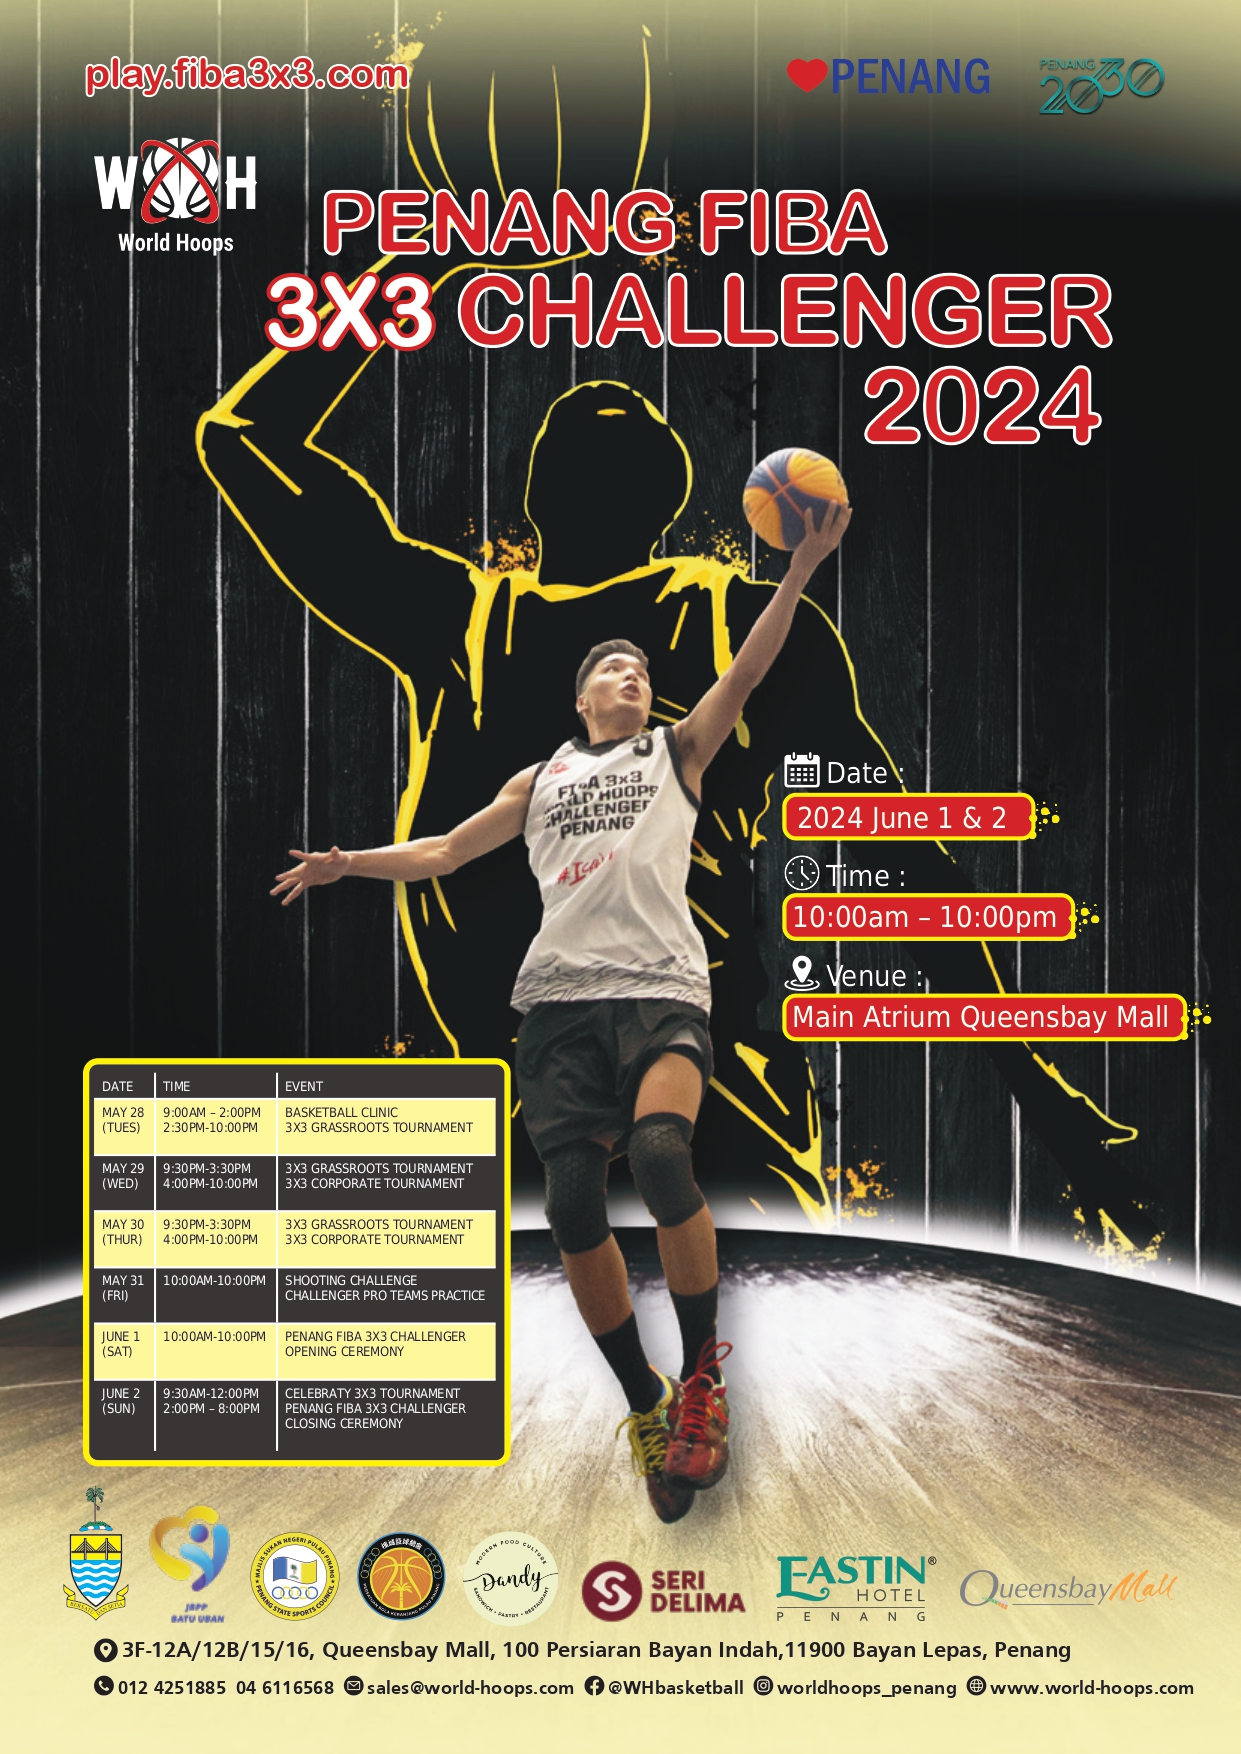 Penang FIBA 3X3 Challenger basketball is back